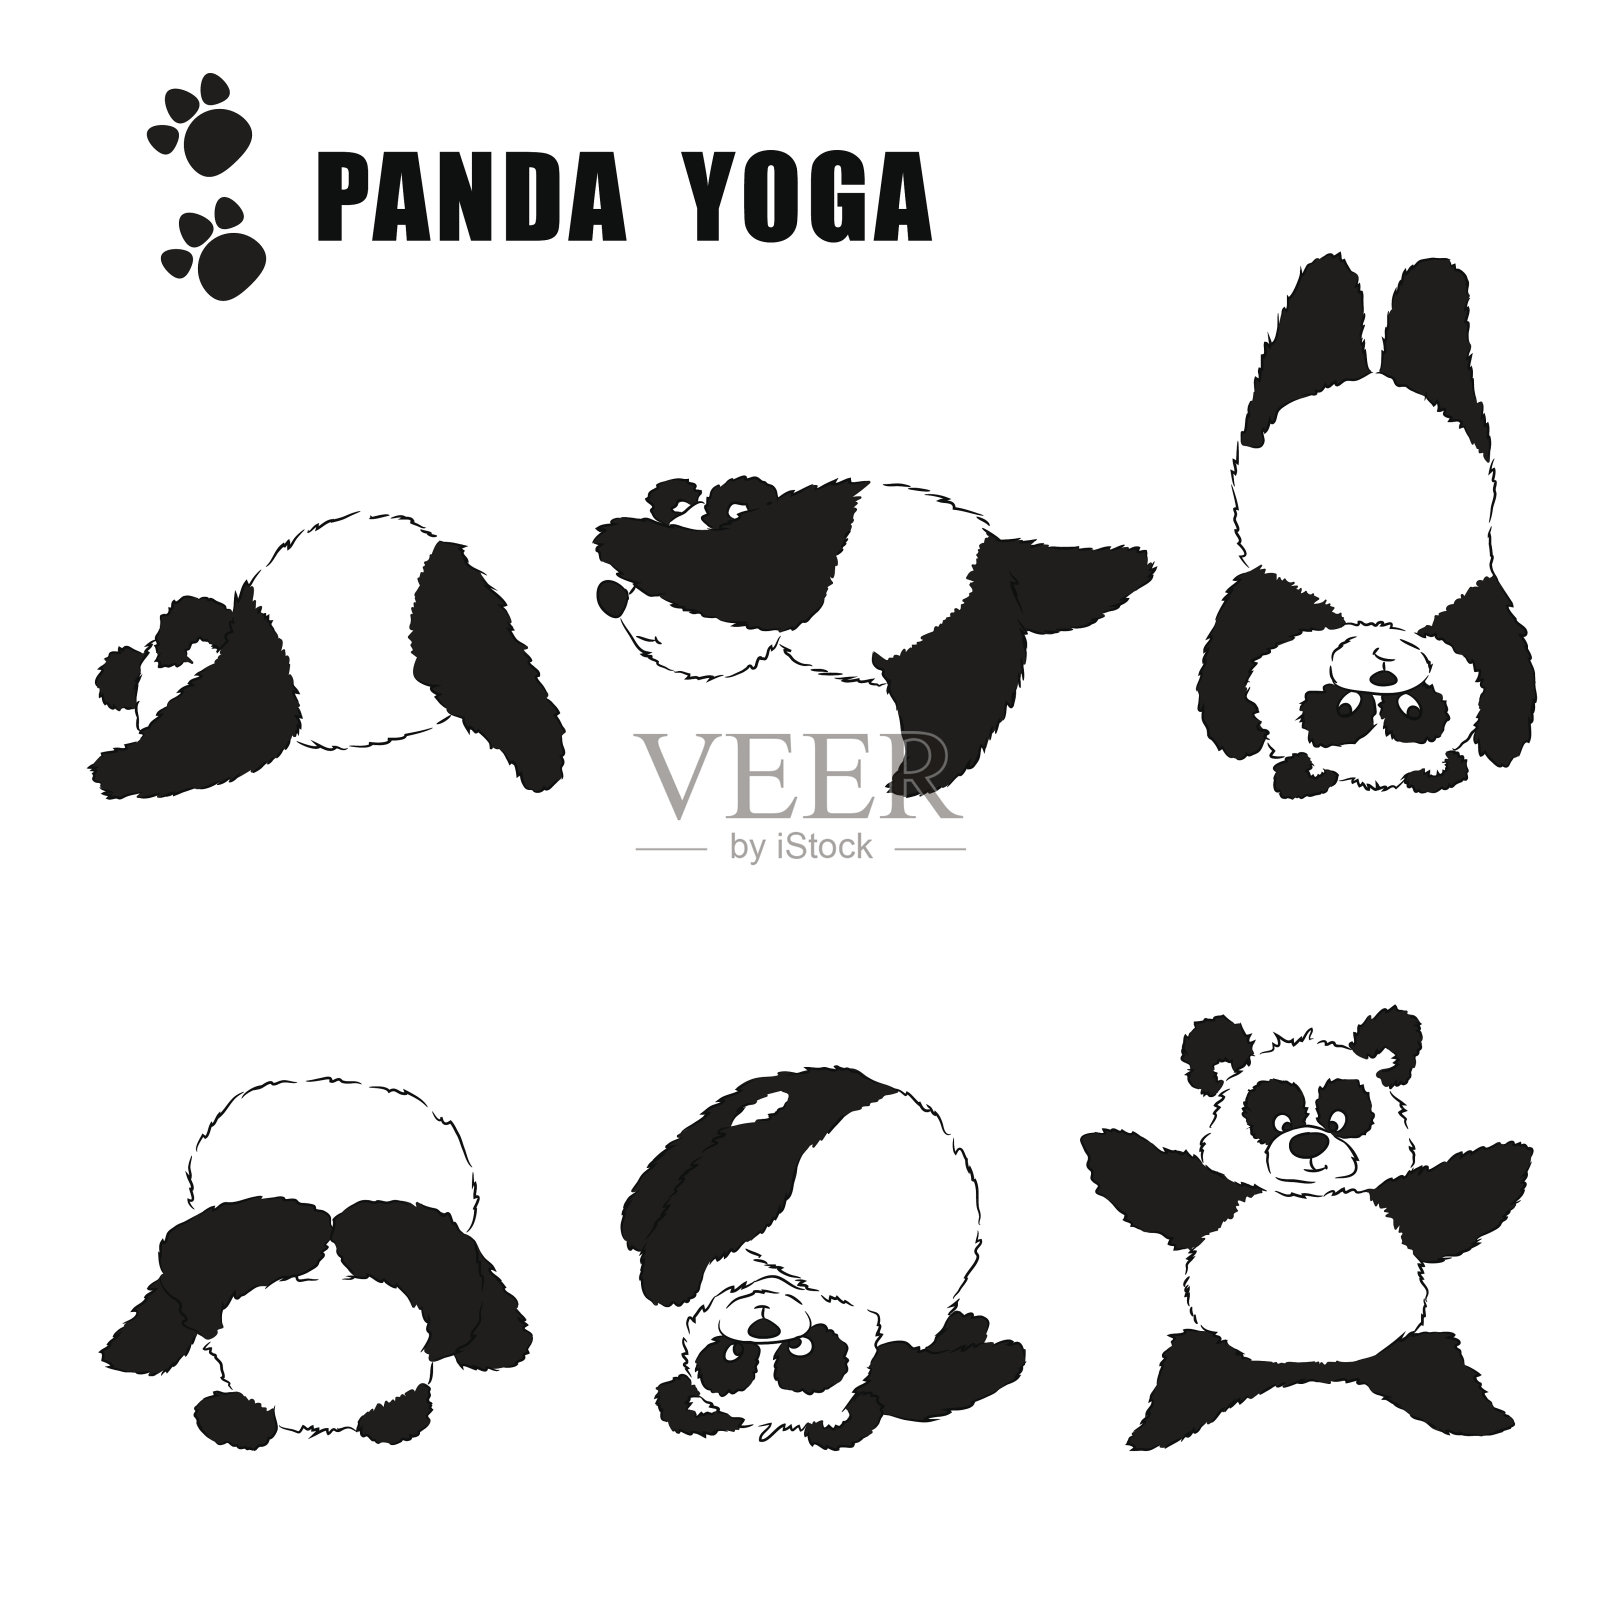 一组练瑜伽的熊猫。透明背景上的黑白图案插画图片素材